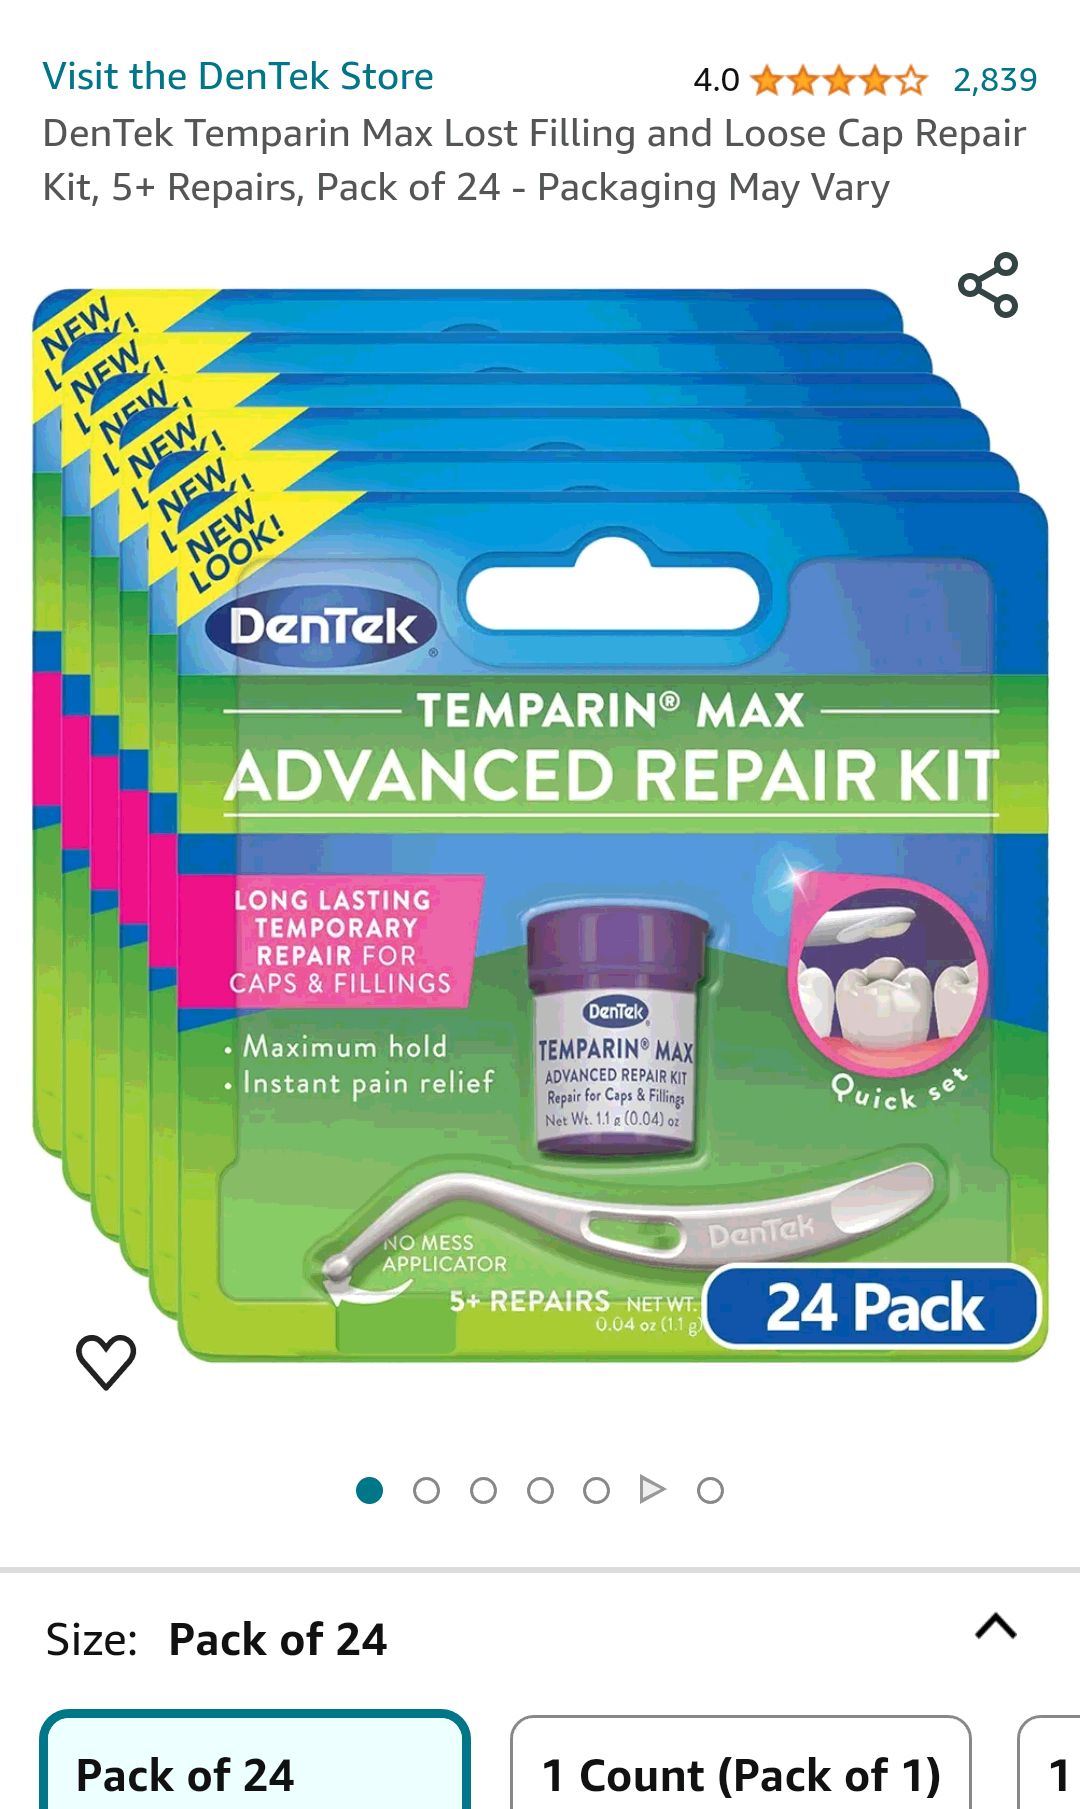 Amazon.com : DenTek Temparin Max Lost Filling and Loose Cap Repair Kit, 5+ Repairs, Pack of 24 - Packaging May Vary : Health & Household